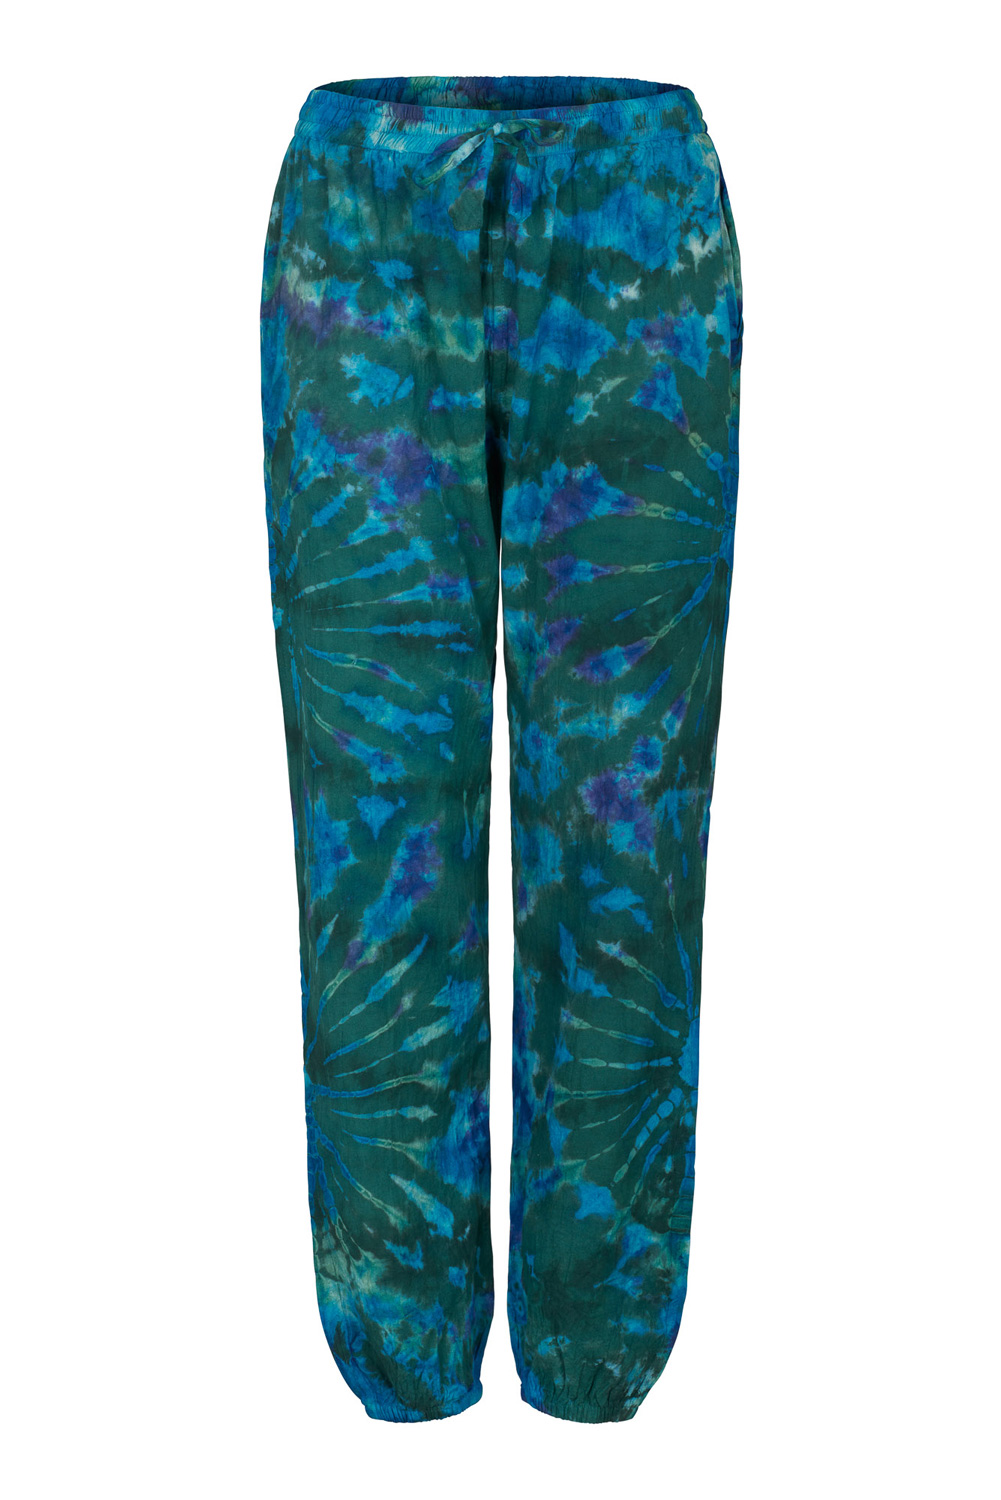 Plus Size Oval Swirls Tie Dye Cotton Leggings in Blue – Harem Pants